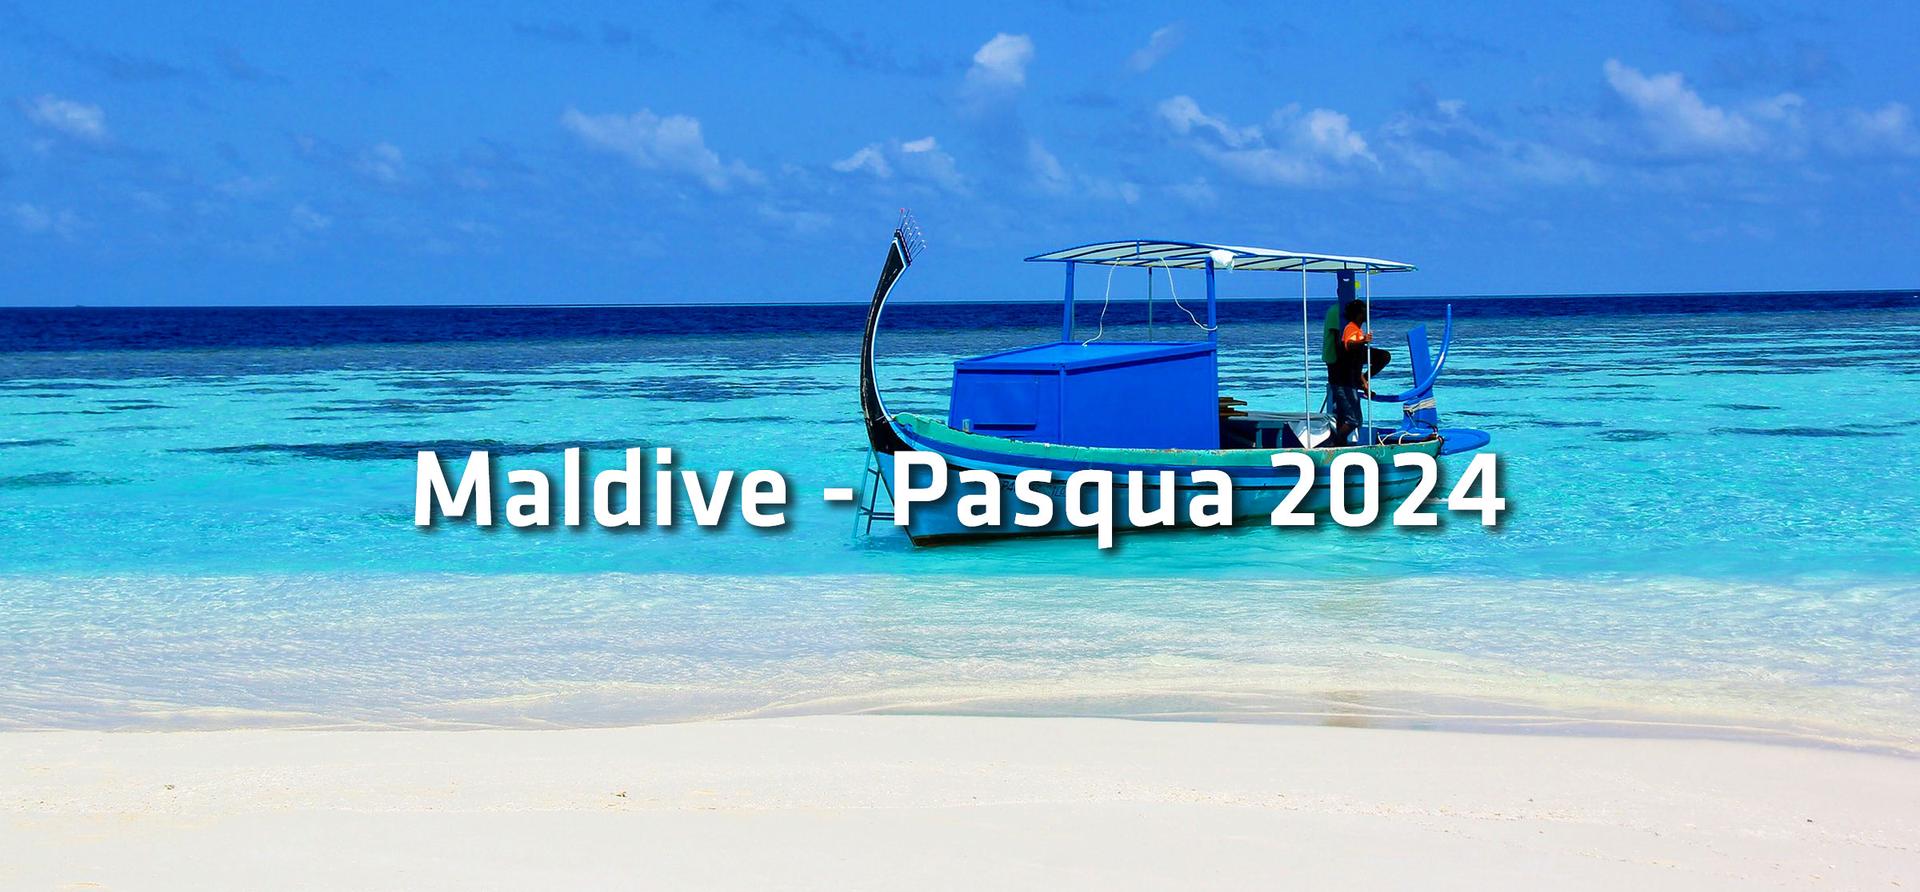 Maldive - Pasqua 2024